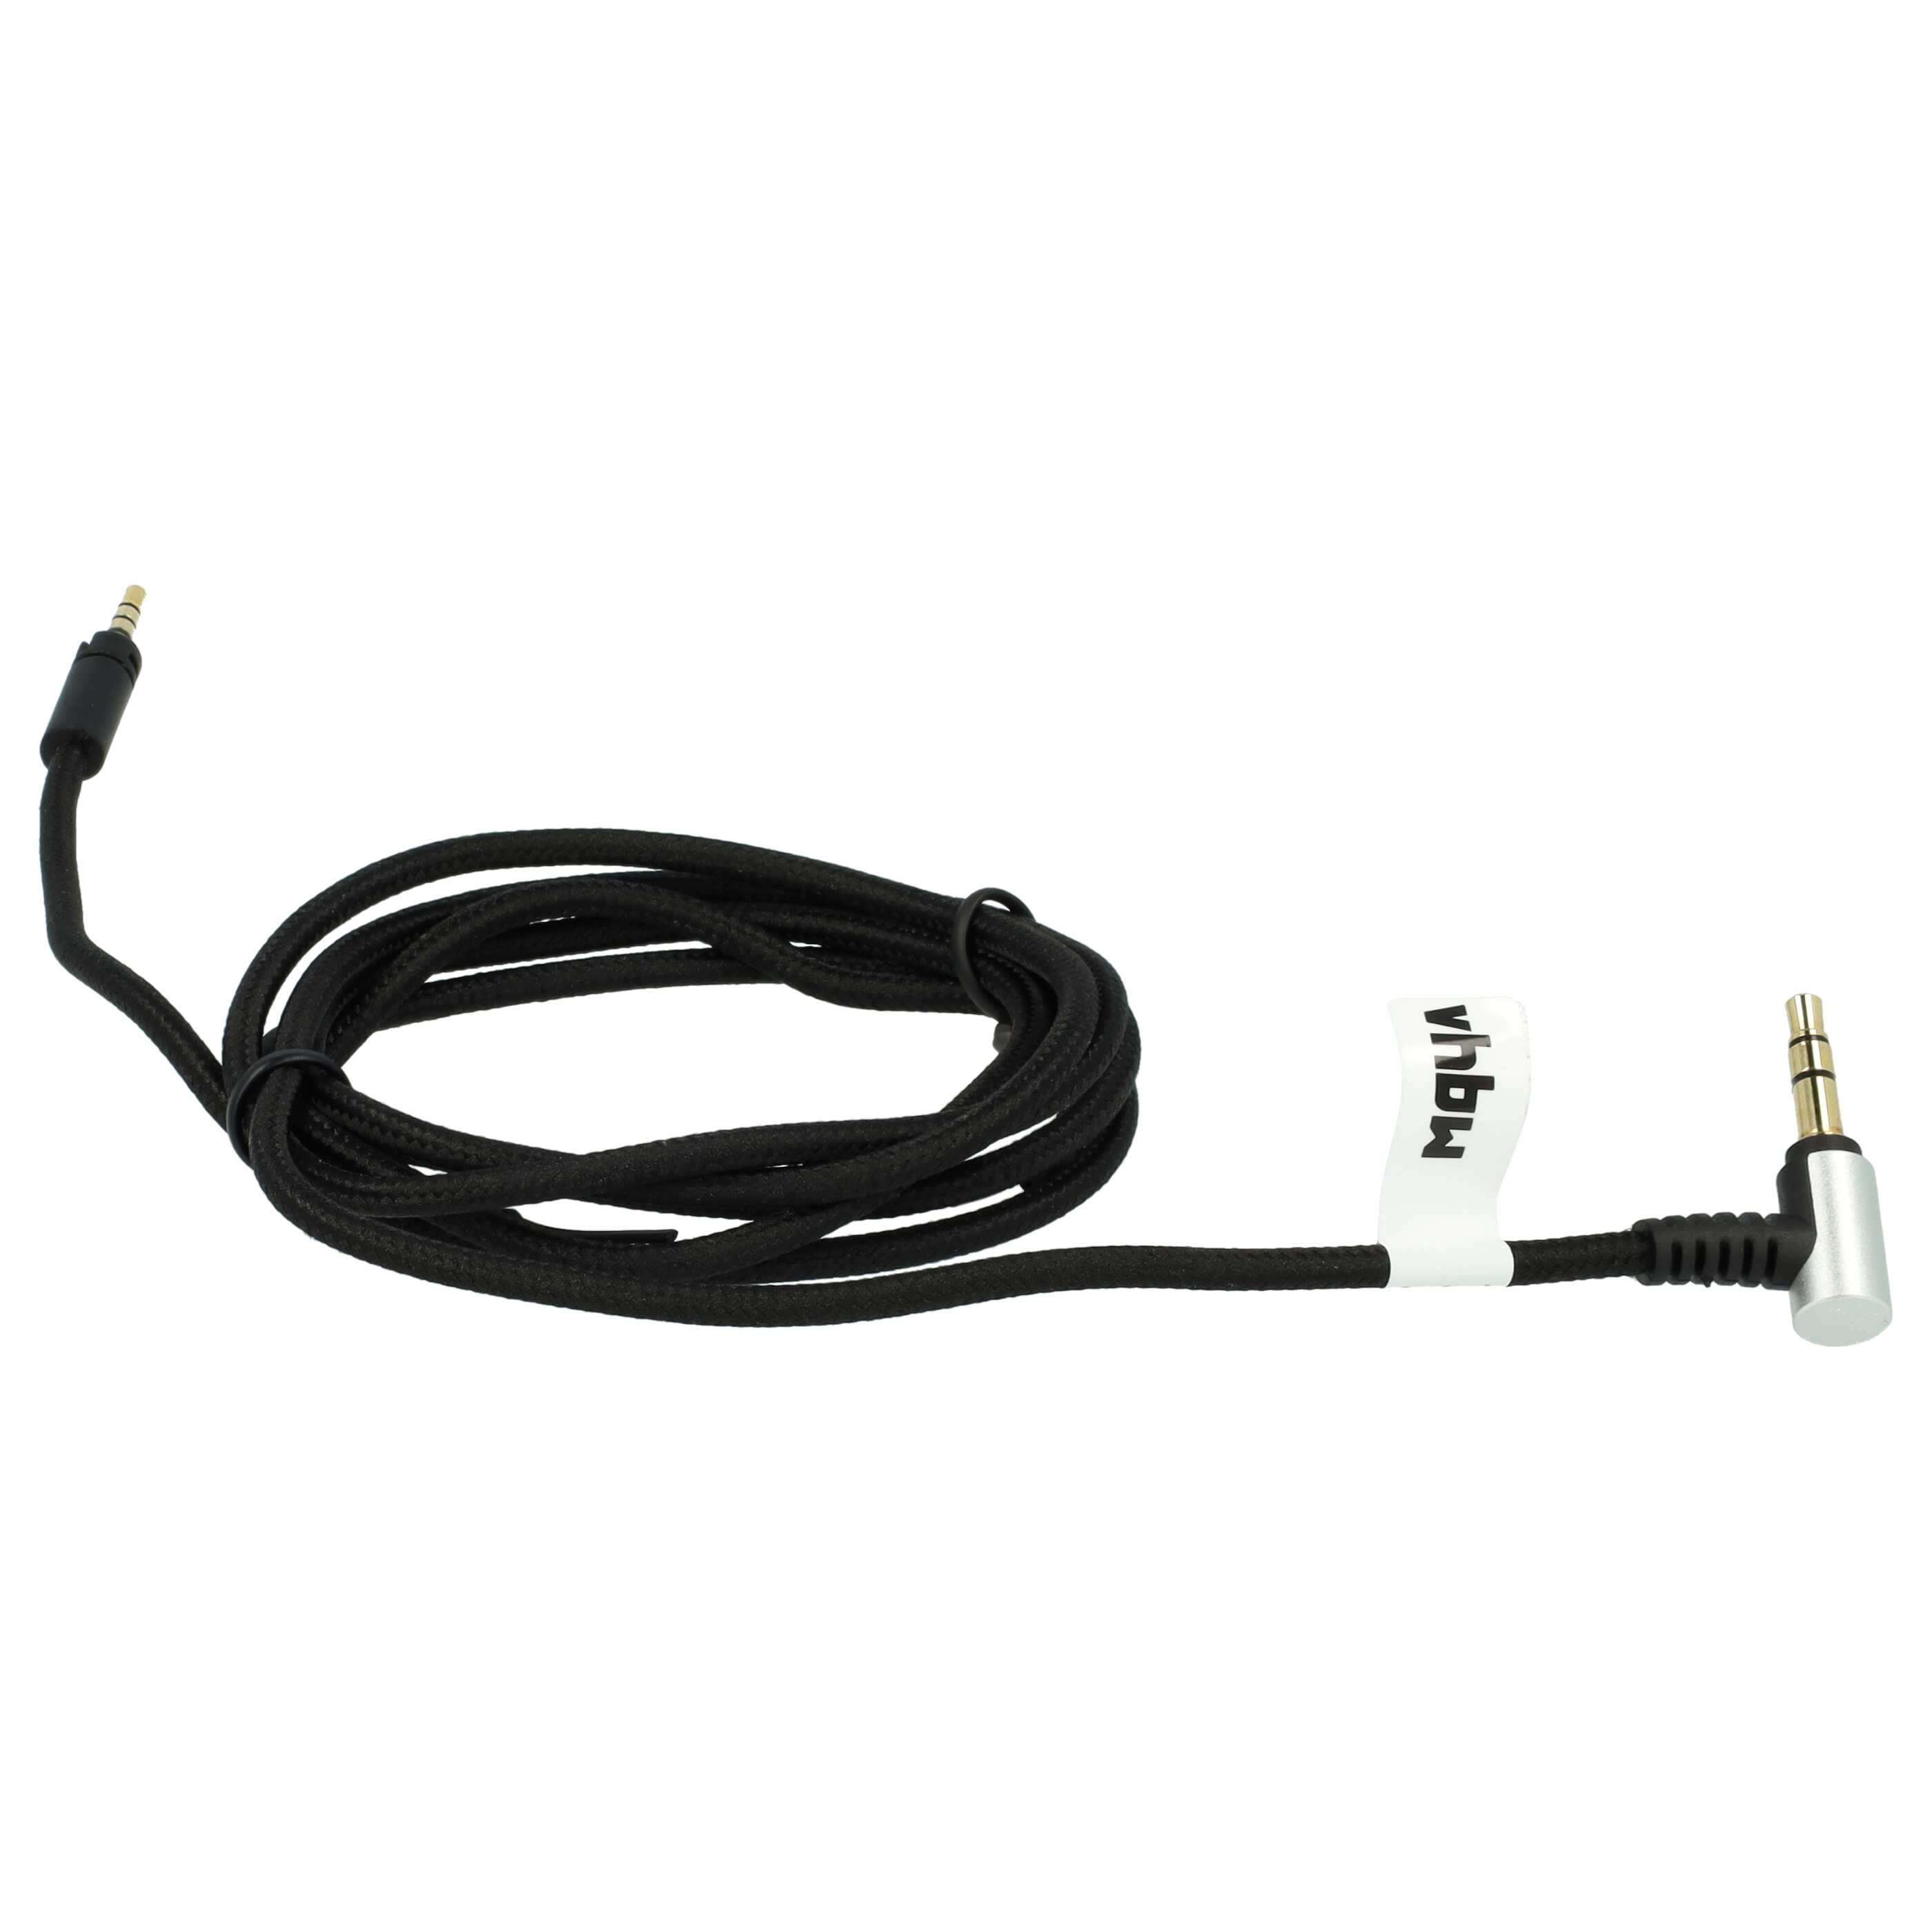 Kopfhörer Kabel als Ersatz für Sennheiser 564549 für Sennheiser , 120 cm, schwarz